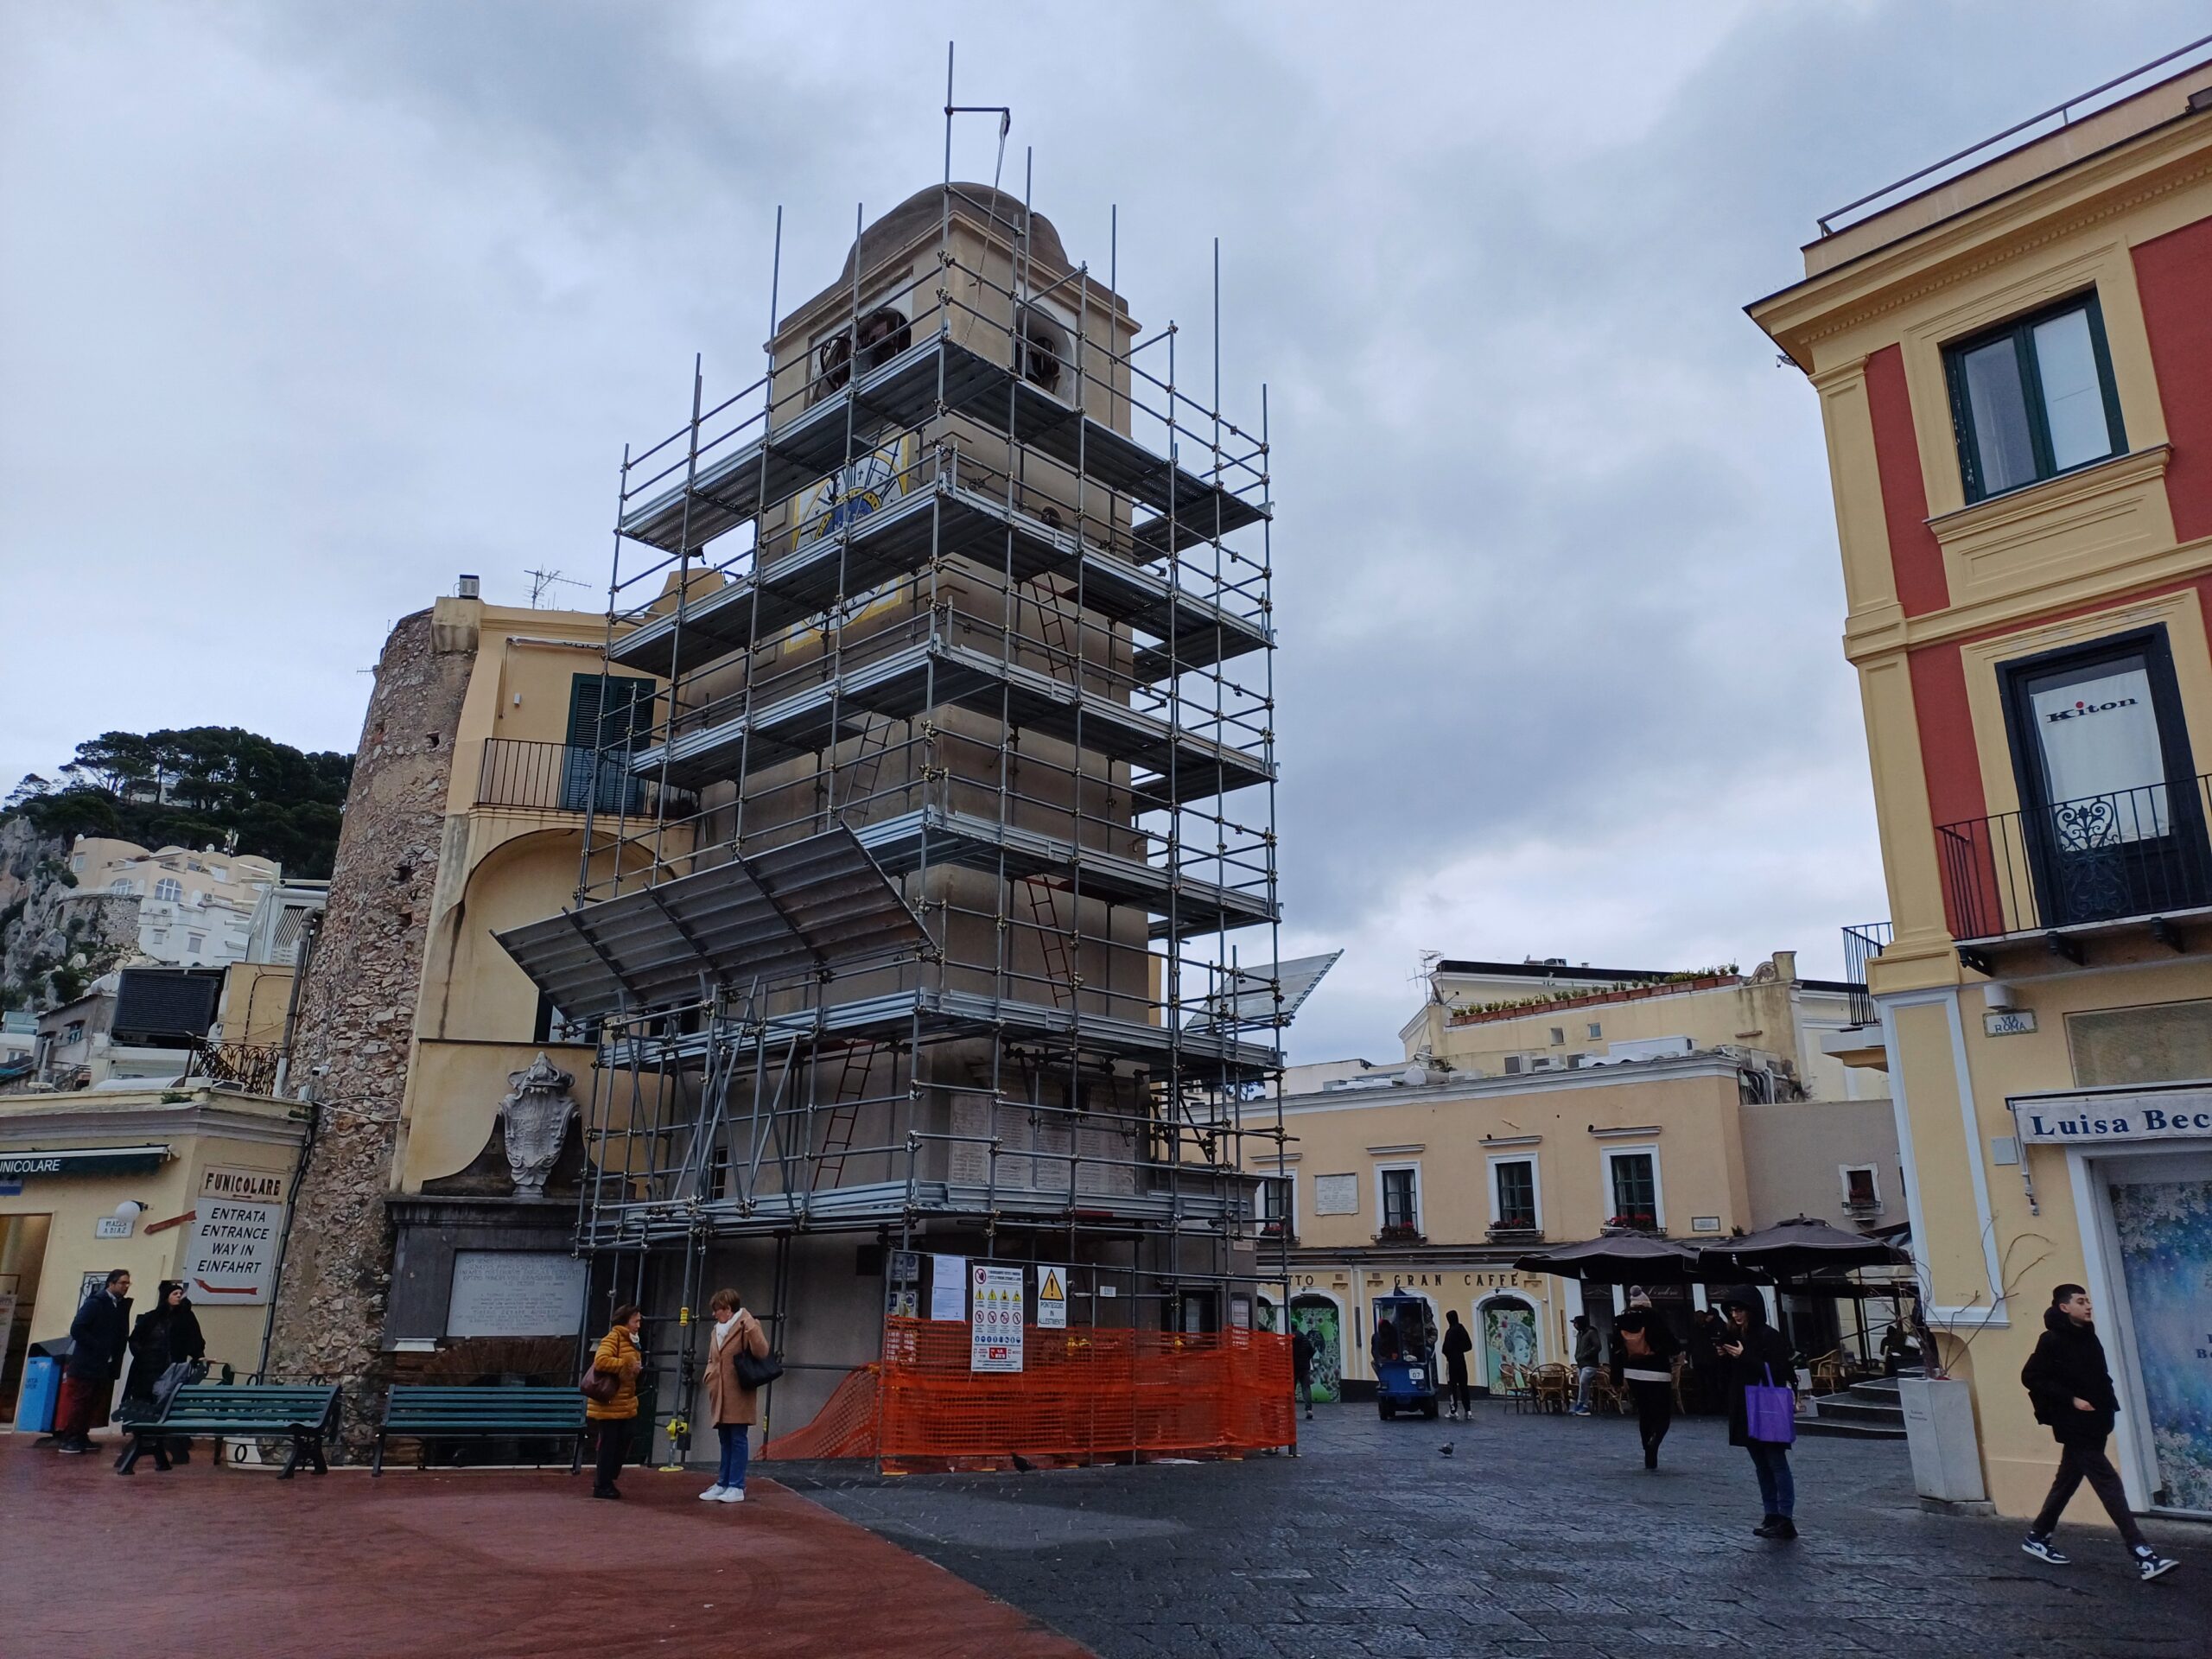 Il campanile della Piazzetta di Capri nascosto dai ponteggi: iniziati i lavori di restauro sulla torre dell’orologio (video e foto)